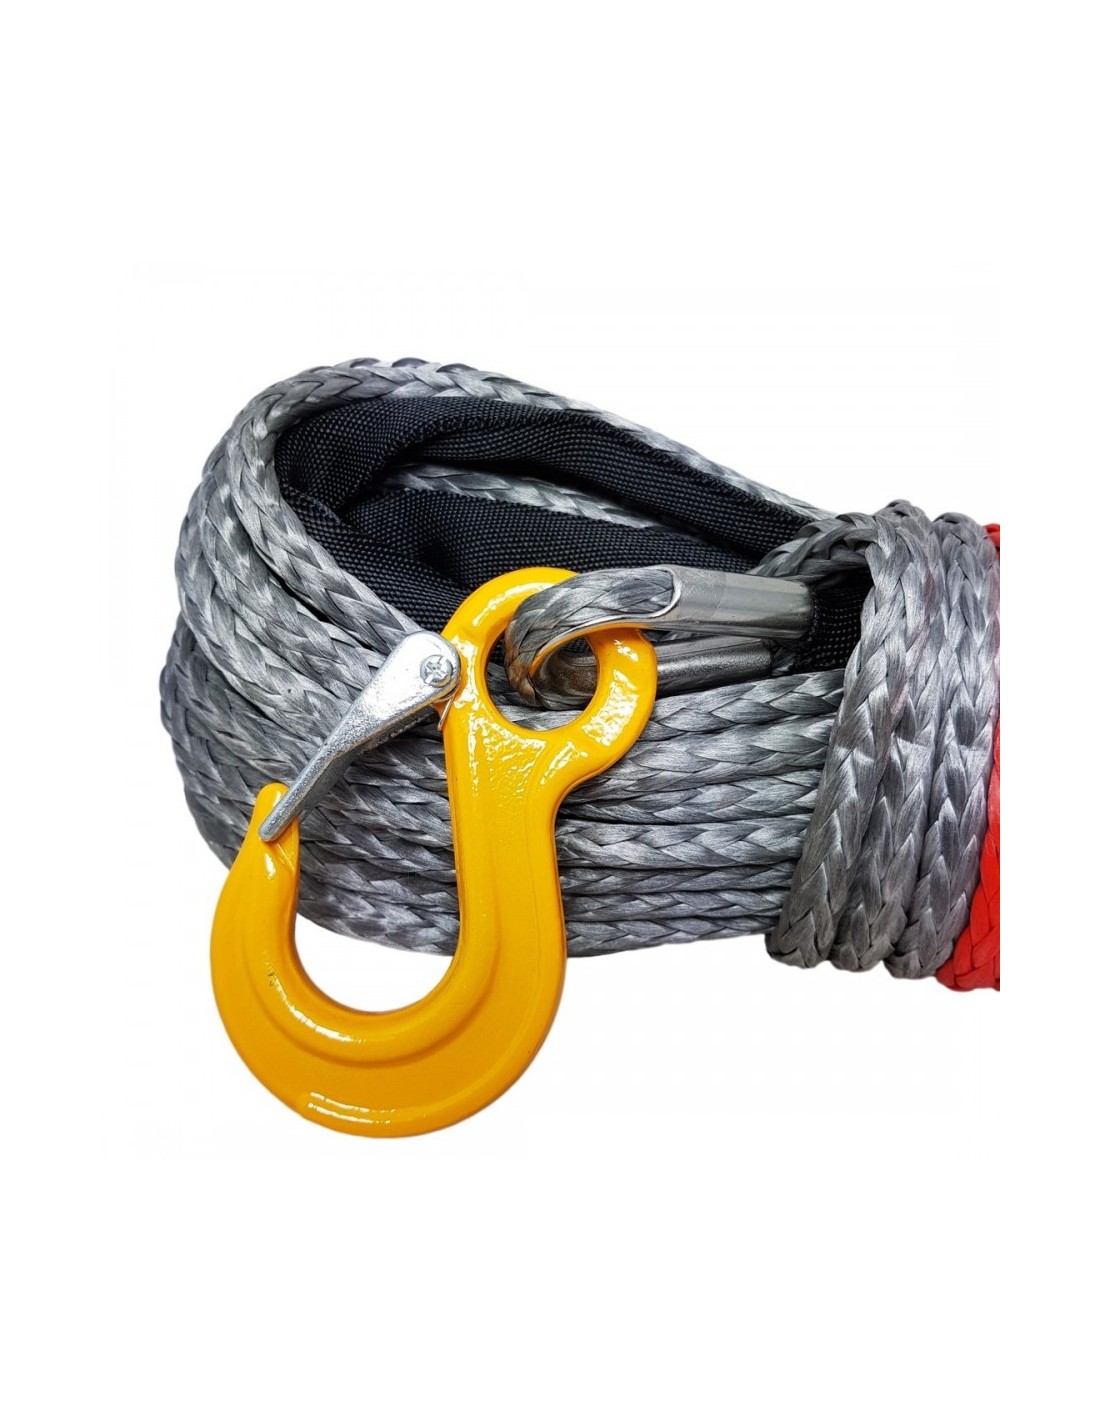 Corde synthétique pour treuil avec écubier alu et crochet de sécurité forgé